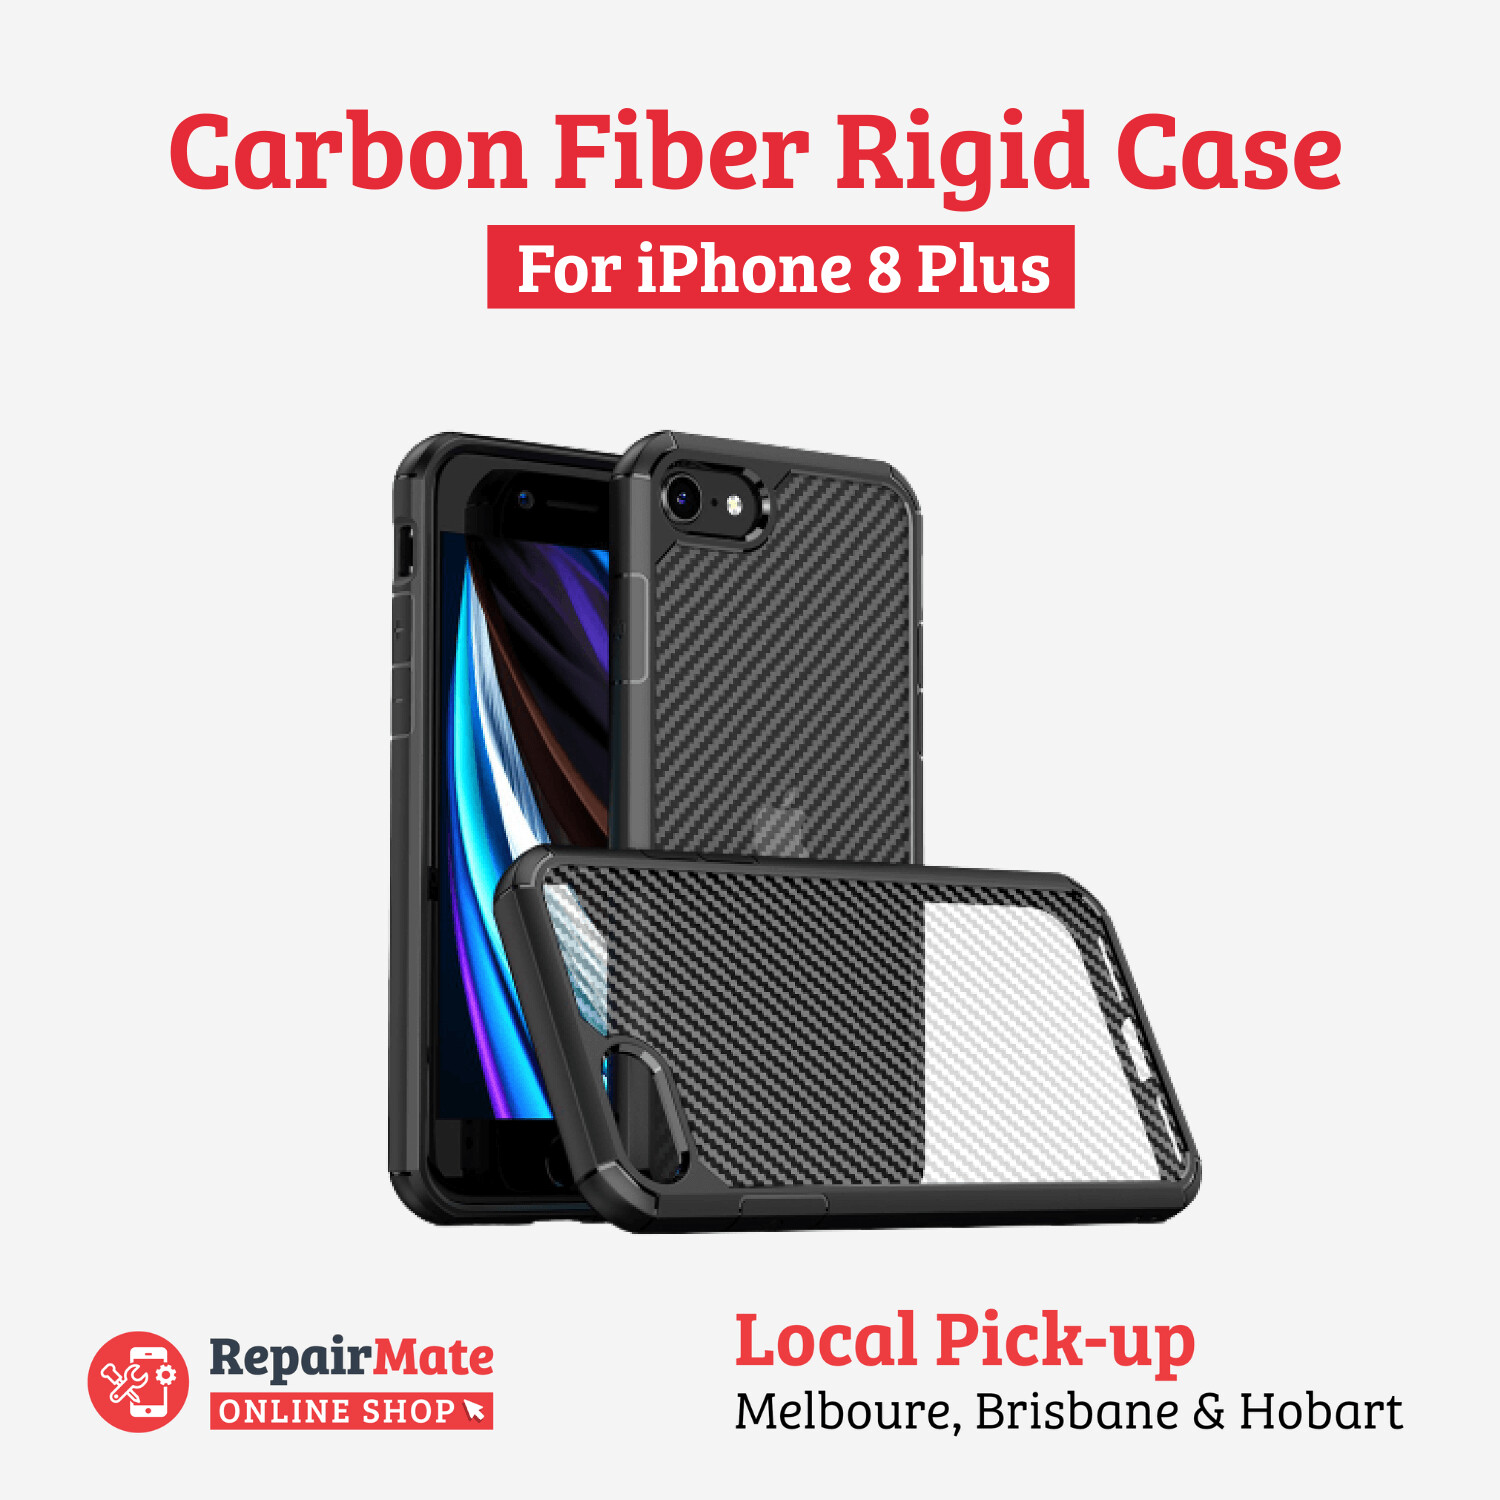 iPhone 8 Plus Carbon Fiber Rigid Case Cover